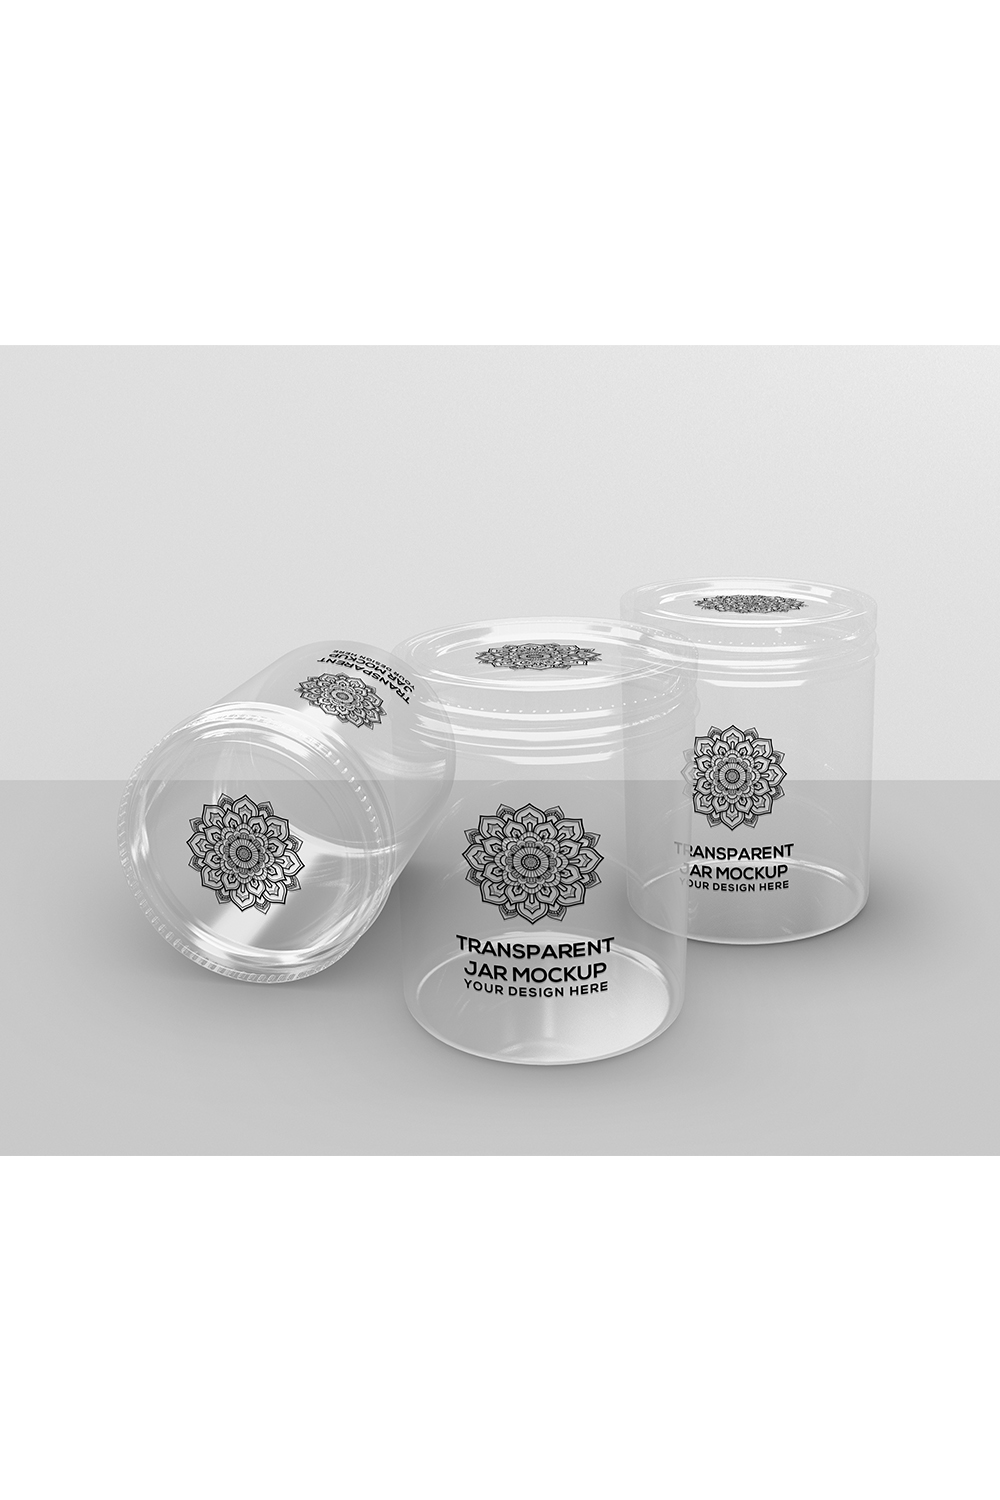 Transparent Jars Packaging Mockup pinterest preview image.